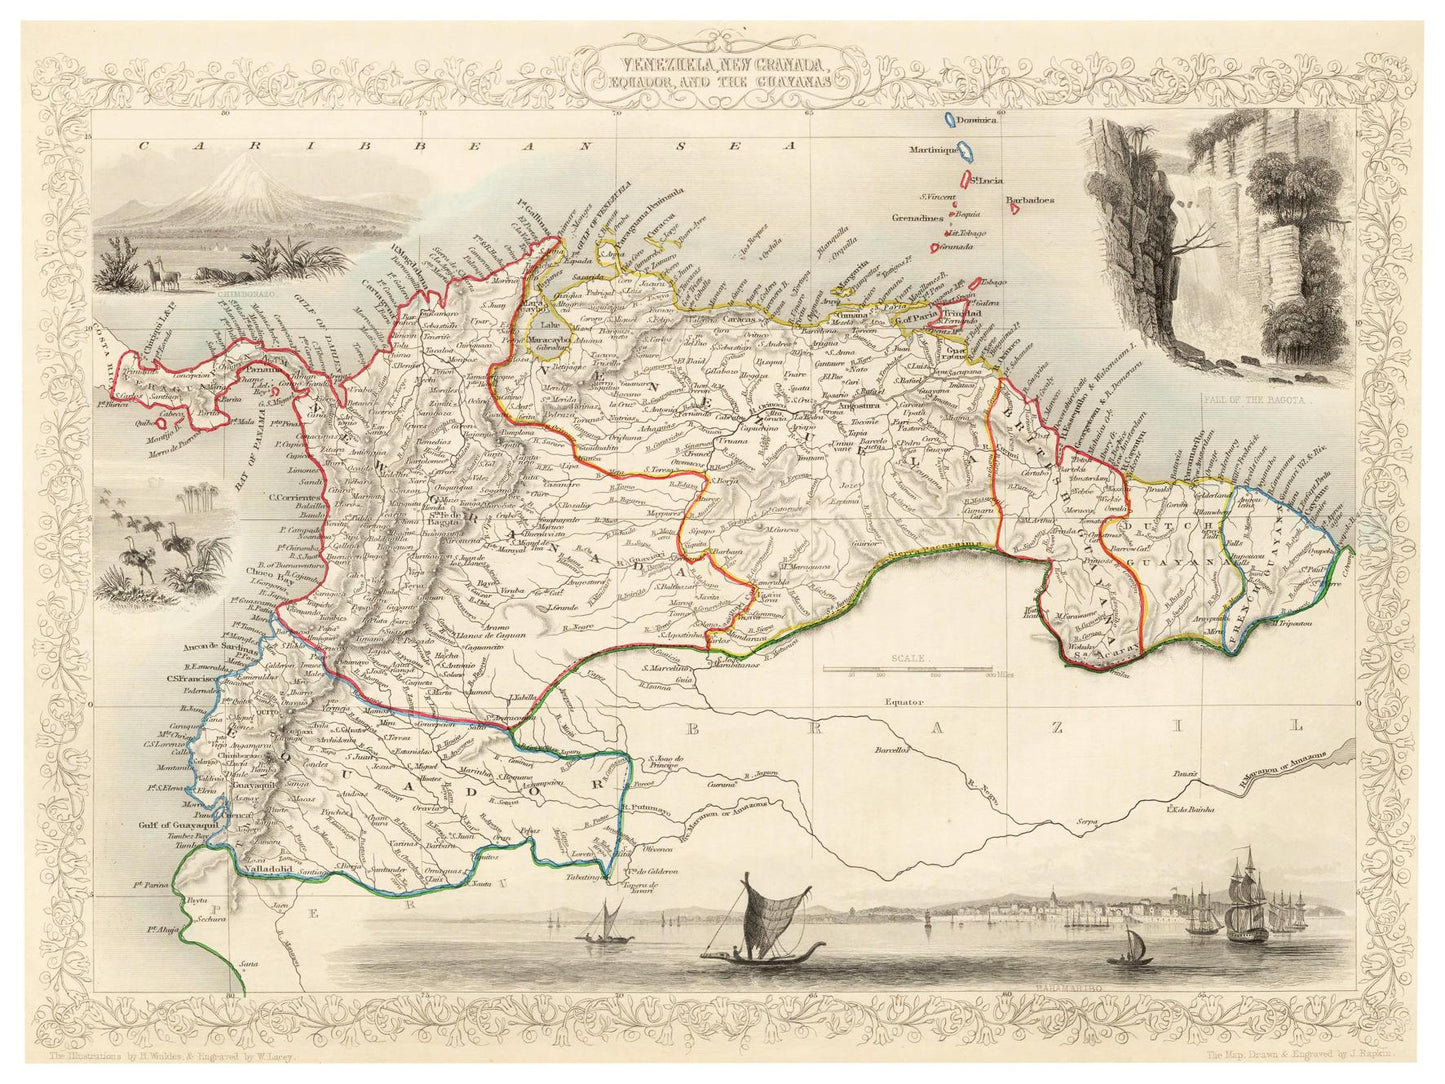 Historische Landkarte Kolumbien & Venezuela um 1850